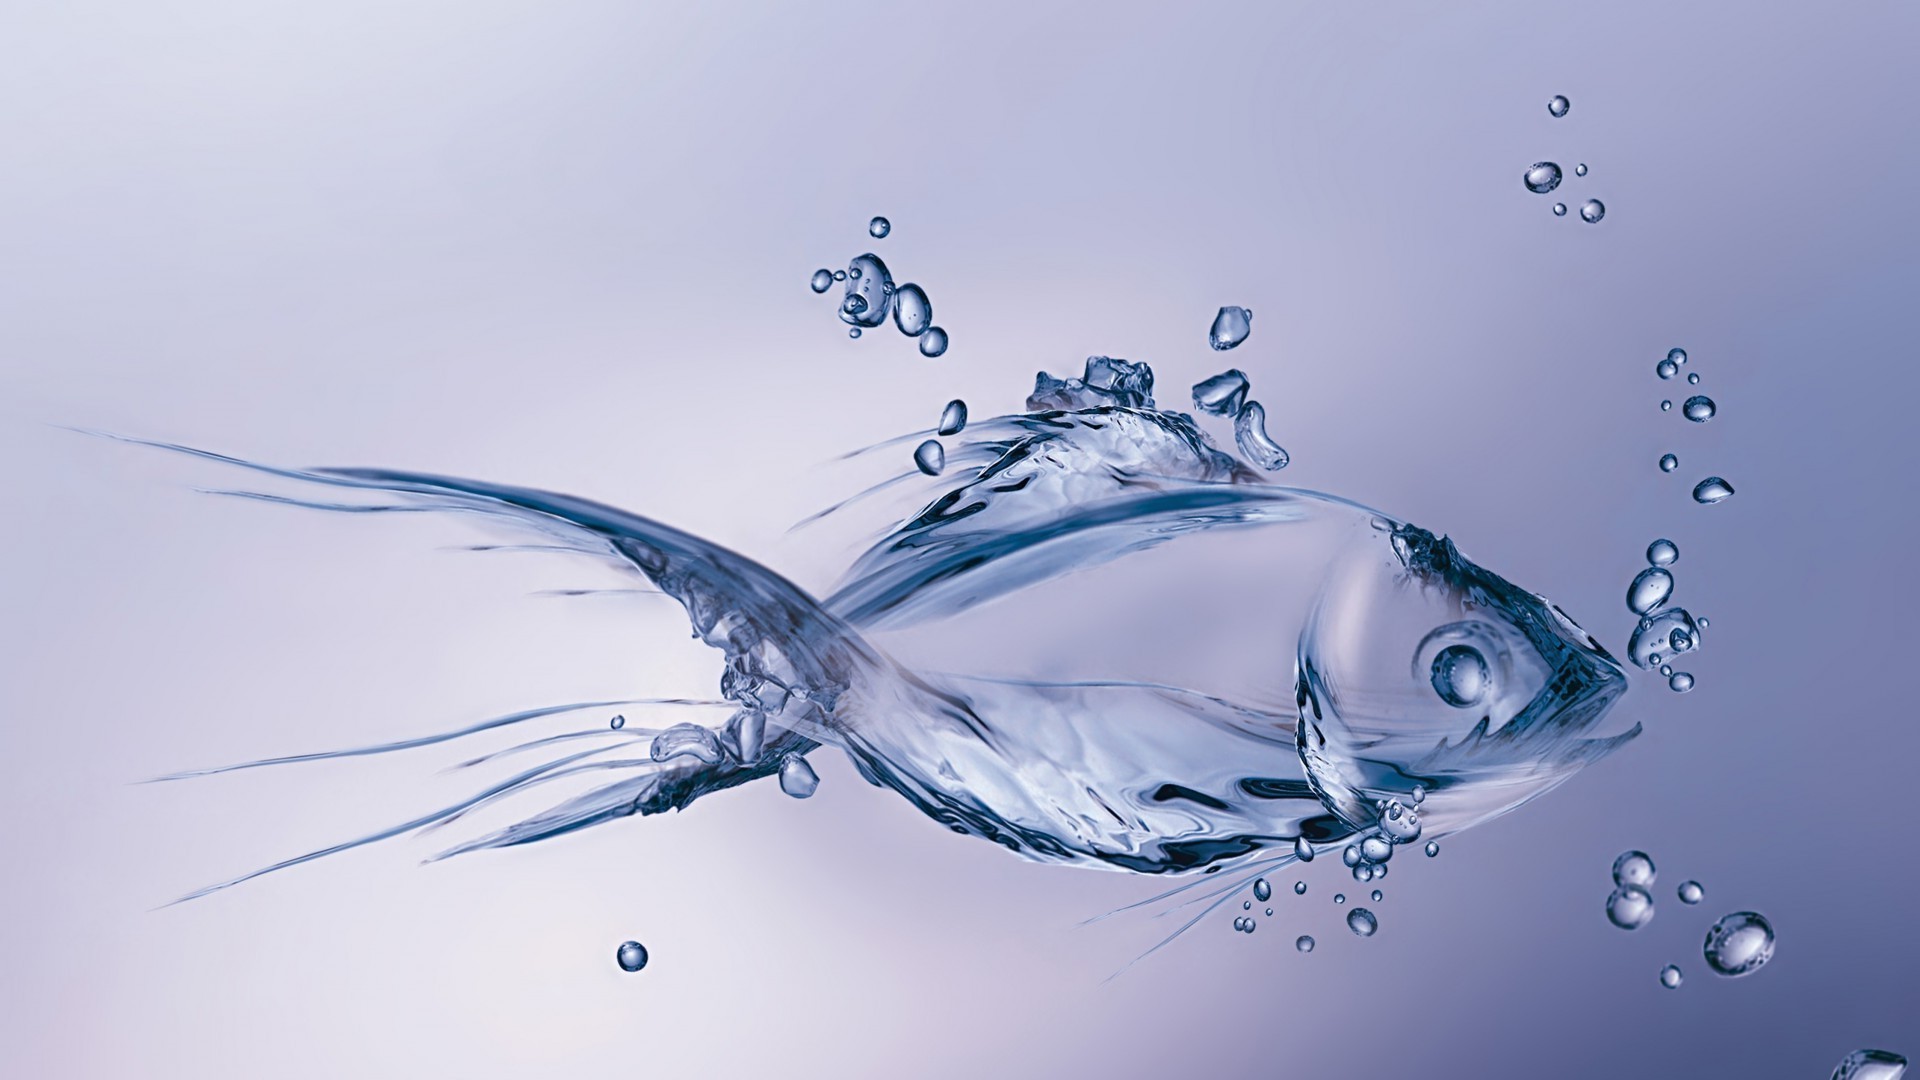 обитатели океанов и рек всплеск падение движения пузырь чистота жидкость чистые мокрый пульсация понятно пить капли поток волна гладкая жажда подводный воды чисто потека